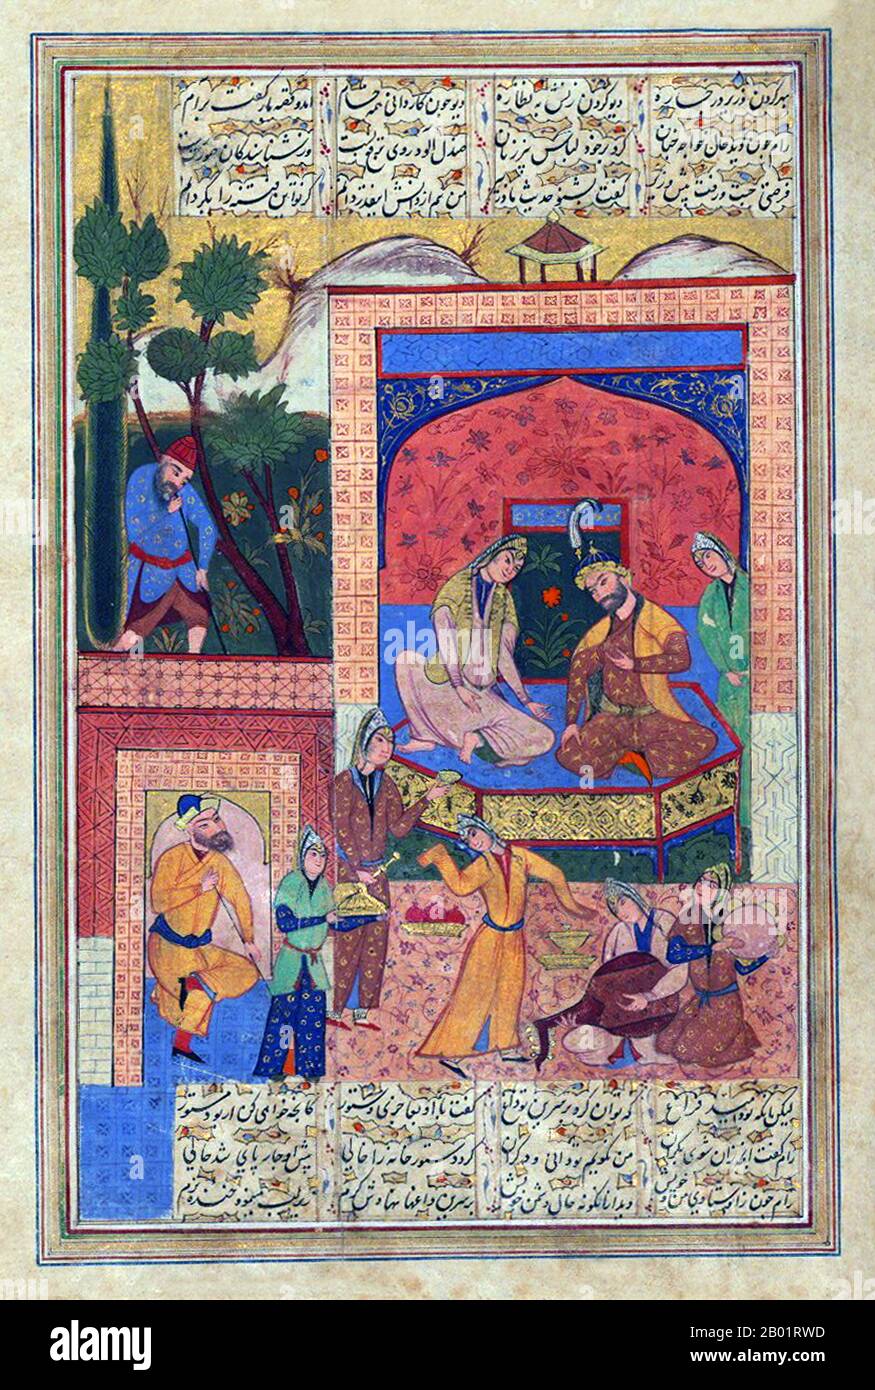 Iran : Prince Sassanide Bahram Gur (400-438) dans le Pavillon du bois de santal. Peinture miniature d'une édition ultérieure de 'Hasht-Bihisht' (huit paradis) d'Amir Khusraw (1253-1325), c. 1609. Bahram V était le 14e roi sassanide de Perse (r. 421-438). Aussi appelé Bahram Gur ou Bahramgur, il était un fils de Yazdegerd Ier, après sa mort soudaine (ou assassinat), il a gagné la couronne contre l'opposition des grands grâce à l'aide de Mundhir, le dynaste arabe d'al-Hirah. Le bois de santal est le nom d'une classe de bois parfumés provenant d'arbres du genre Santalum. Les bois sont lourds, jaunes et à grain fin. Banque D'Images